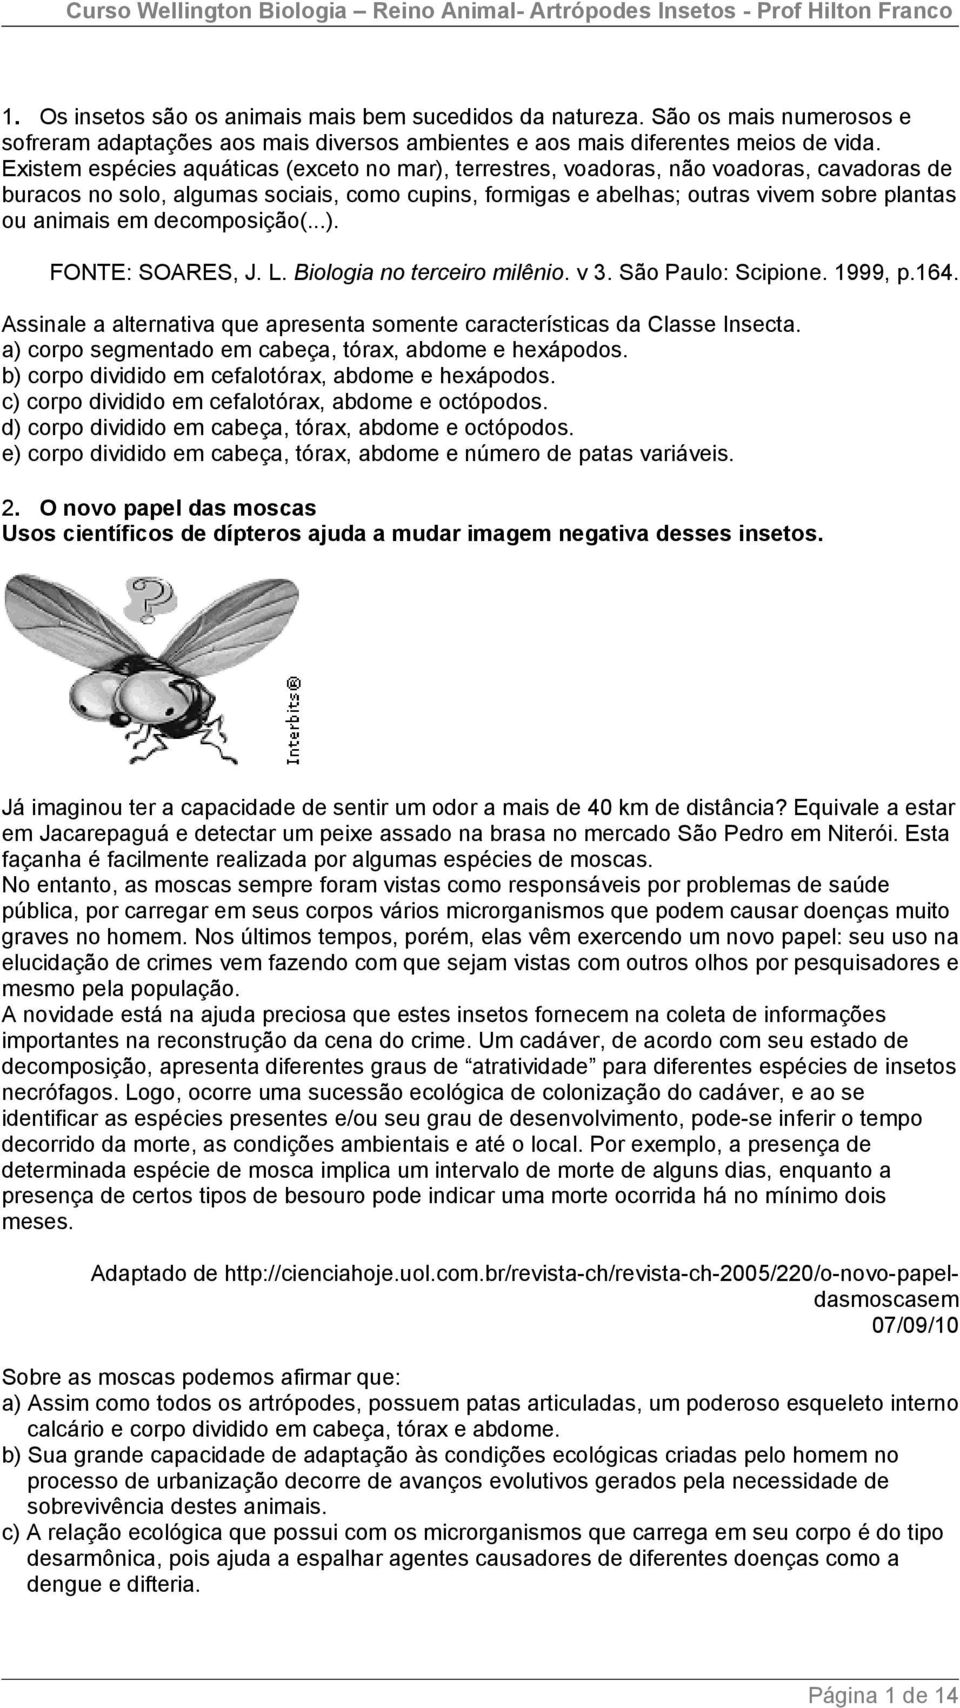 em decomposição(...). FONTE: SOARES, J. L. Biologia no terceiro milênio. v 3. São Paulo: Scipione. 1999, p.164. Assinale a alternativa que apresenta somente características da Classe Insecta.